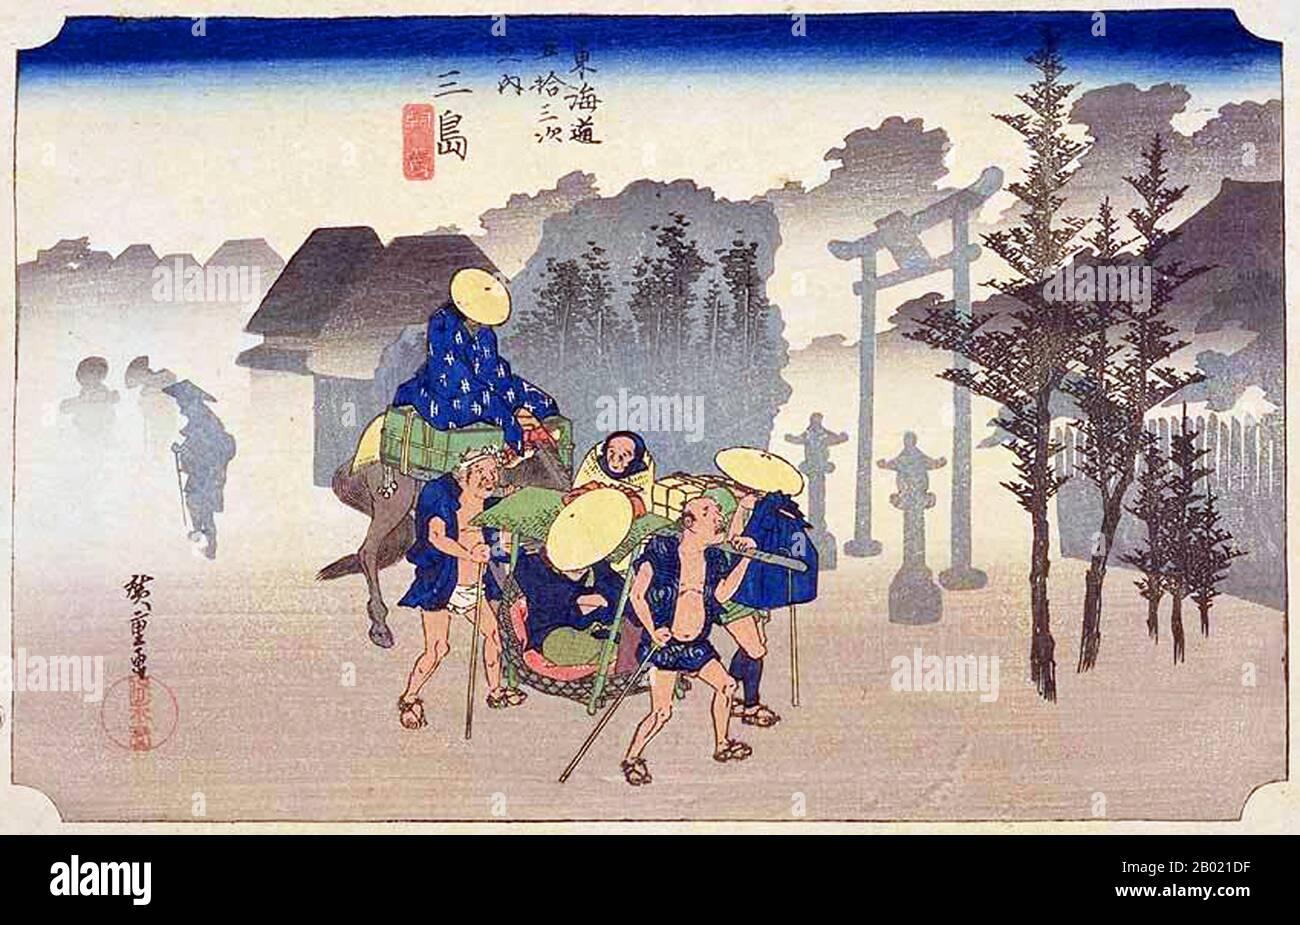 Mishima: Reisende, die in den Nebel des frühen Morgens aufbrechen, einer zu Pferd und der andere in einem kago. Am Eingang zum Hakone-Pass gelegen, war diese Station das ganze Jahr über voll von Reisenden. Utagawa Hiroshige (歌川 広重, * um die Welt der Künstler) (* um die Welt der  ; † 12. Oktober 1858) war ein japanischer Ukiyo-e-Künstler und einer der letzten großen Künstler dieser Tradition. Er wurde auch als Andō Hiroshige (安藤 広重) (eine unregelmäßige Kombination aus Familiennamen und Kunstnamen) und mit dem Kunstnamen Ichiyūsai Hiroshige (一幽斎廣重) bezeichnet. Die Tōkaidō (東海道 Ostseestraße) war die wichtigste der Fünf Routen der Edo-Zeit, Co Stockfoto